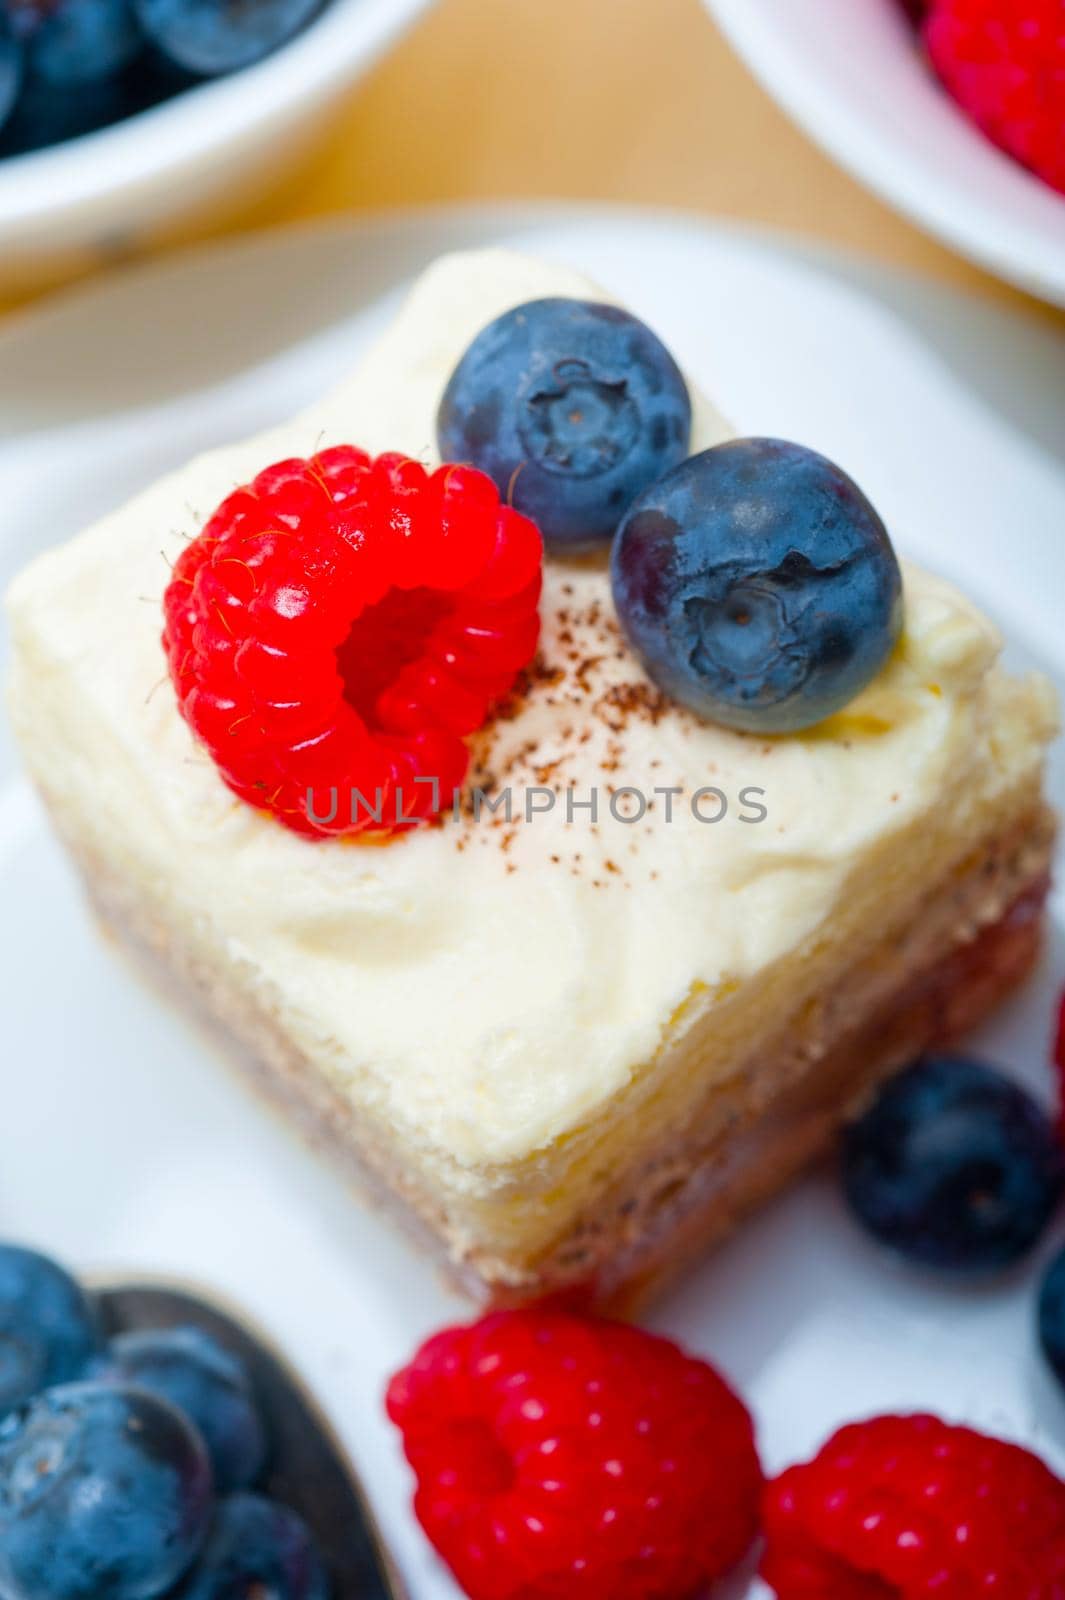 fresh raspberry and blueberry cake by keko64